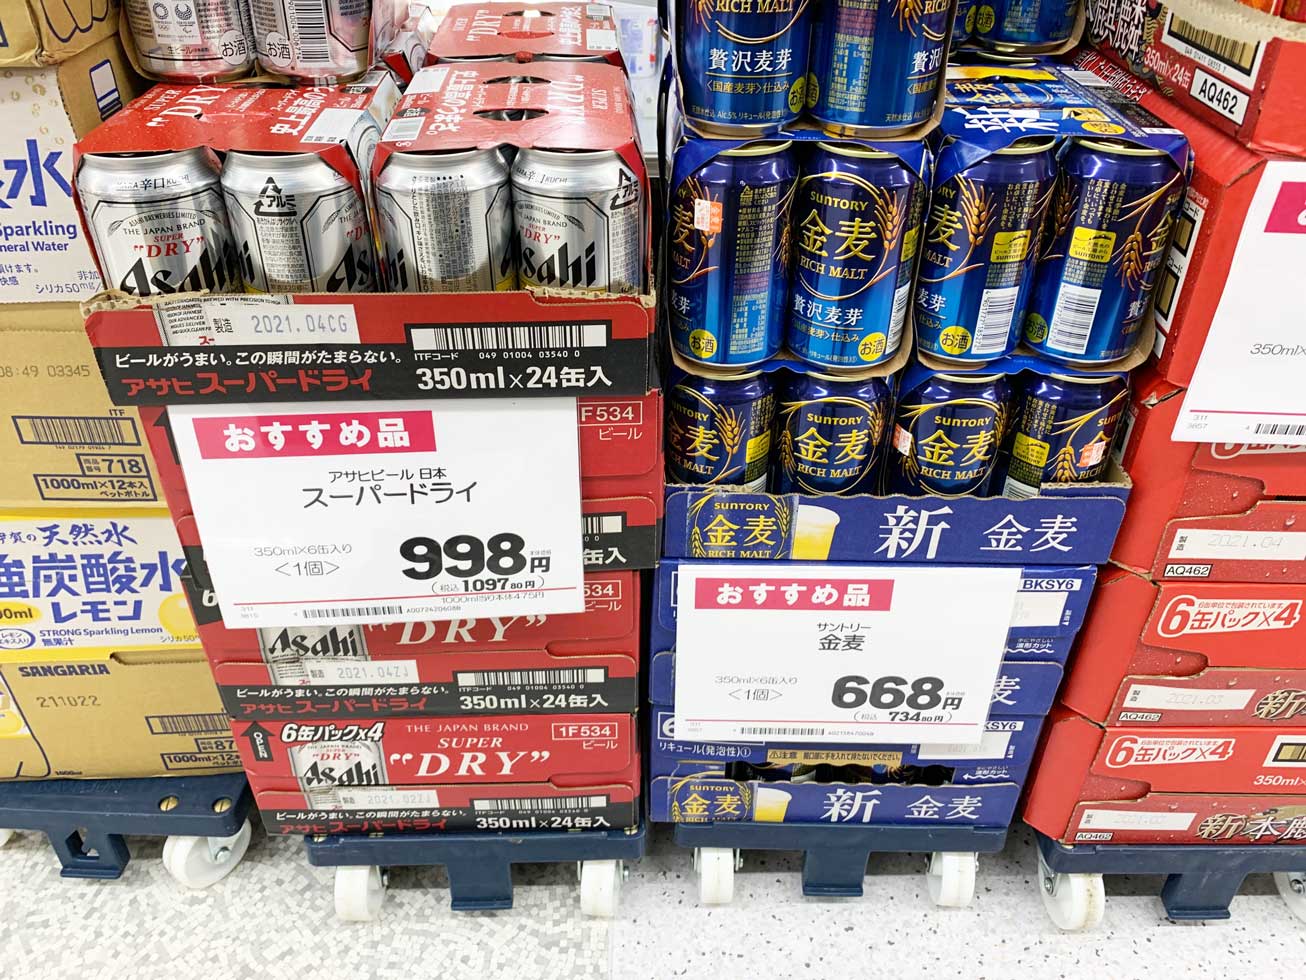 コンビニのビール チューハイ価格一覧 比較 スーパーとの価格差はいくら